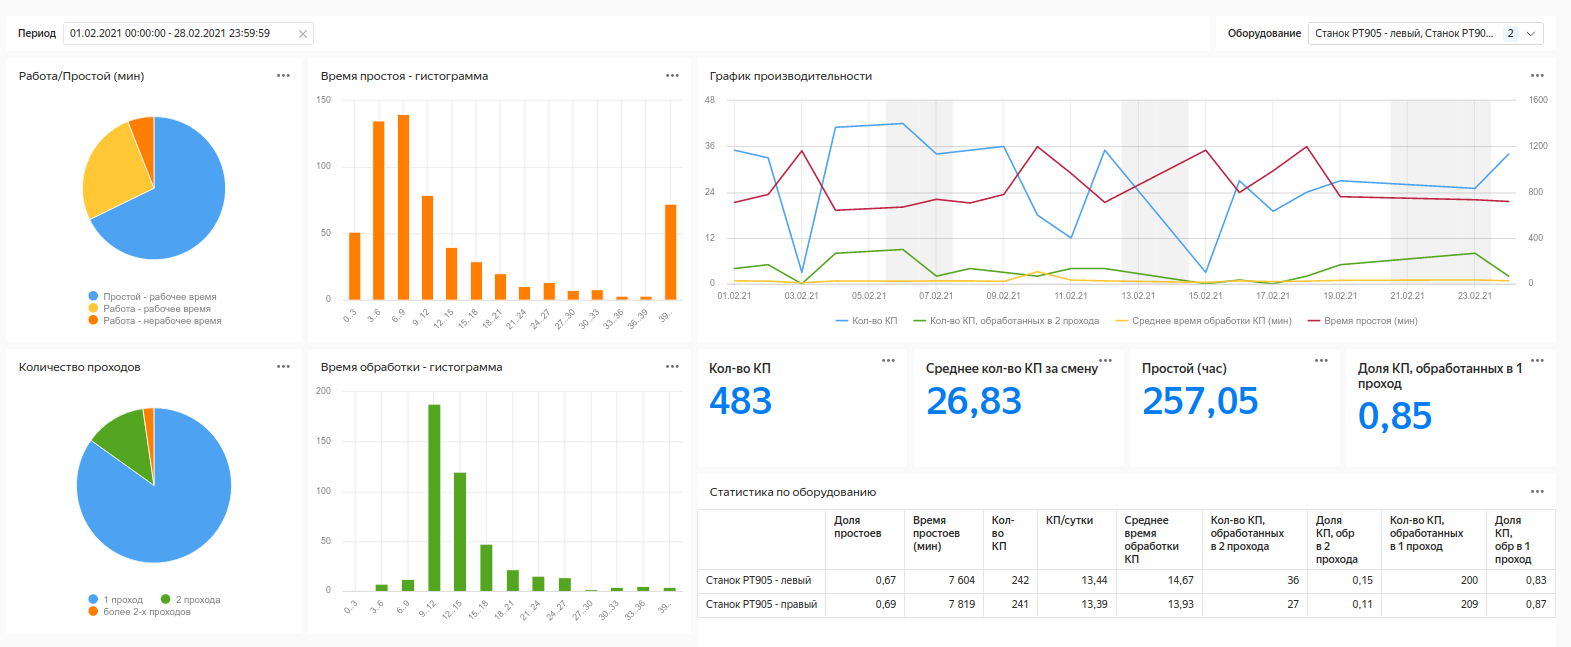 Аналитика для станков: IIoT с помощью сервисов Yandex.Cloud и оборудования Moxa